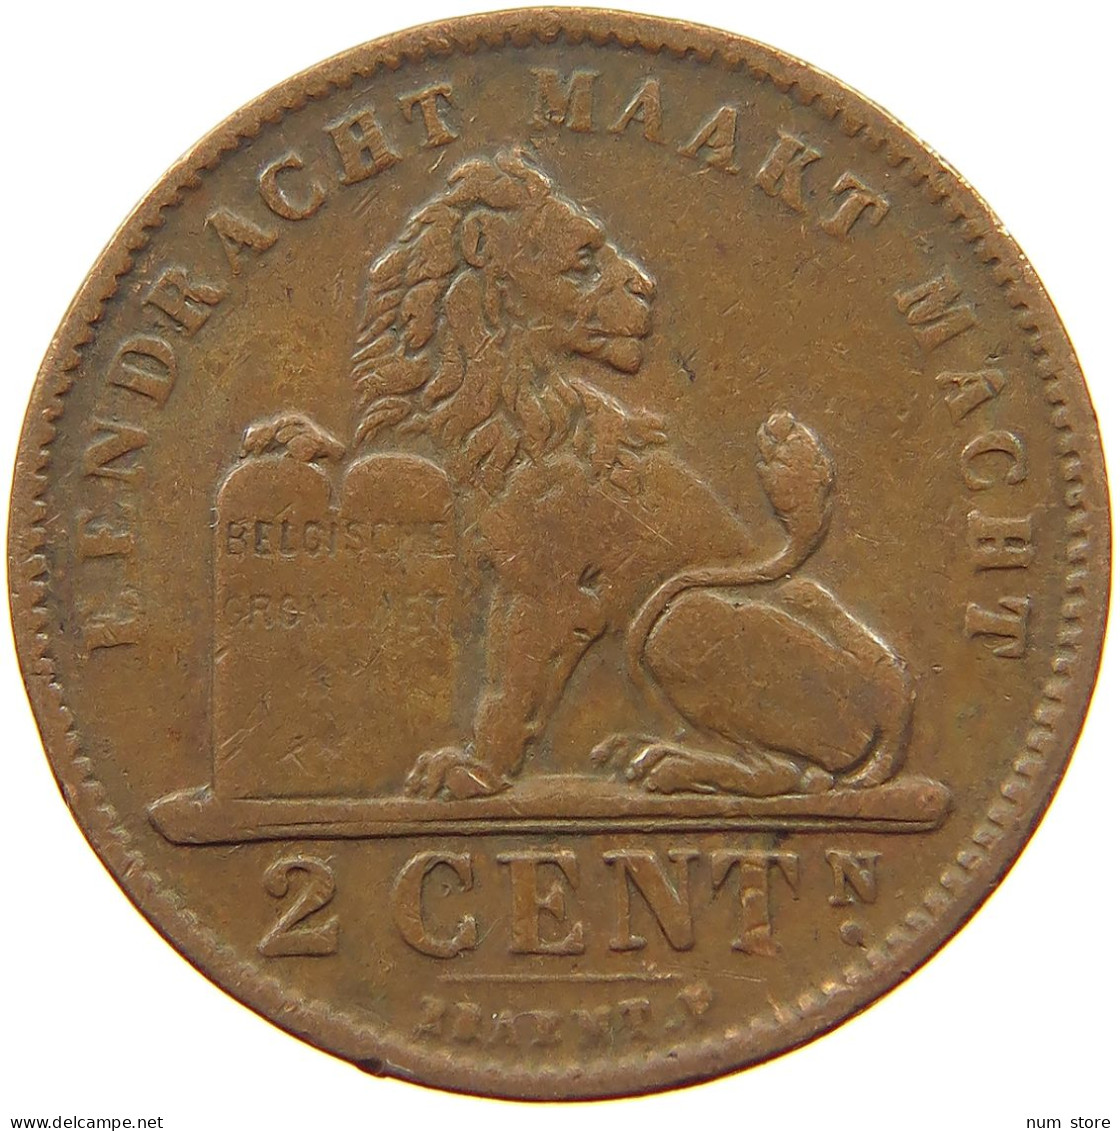 BELGIUM 2 CENTIMES 1905 #a012 0281 - 2 Cents